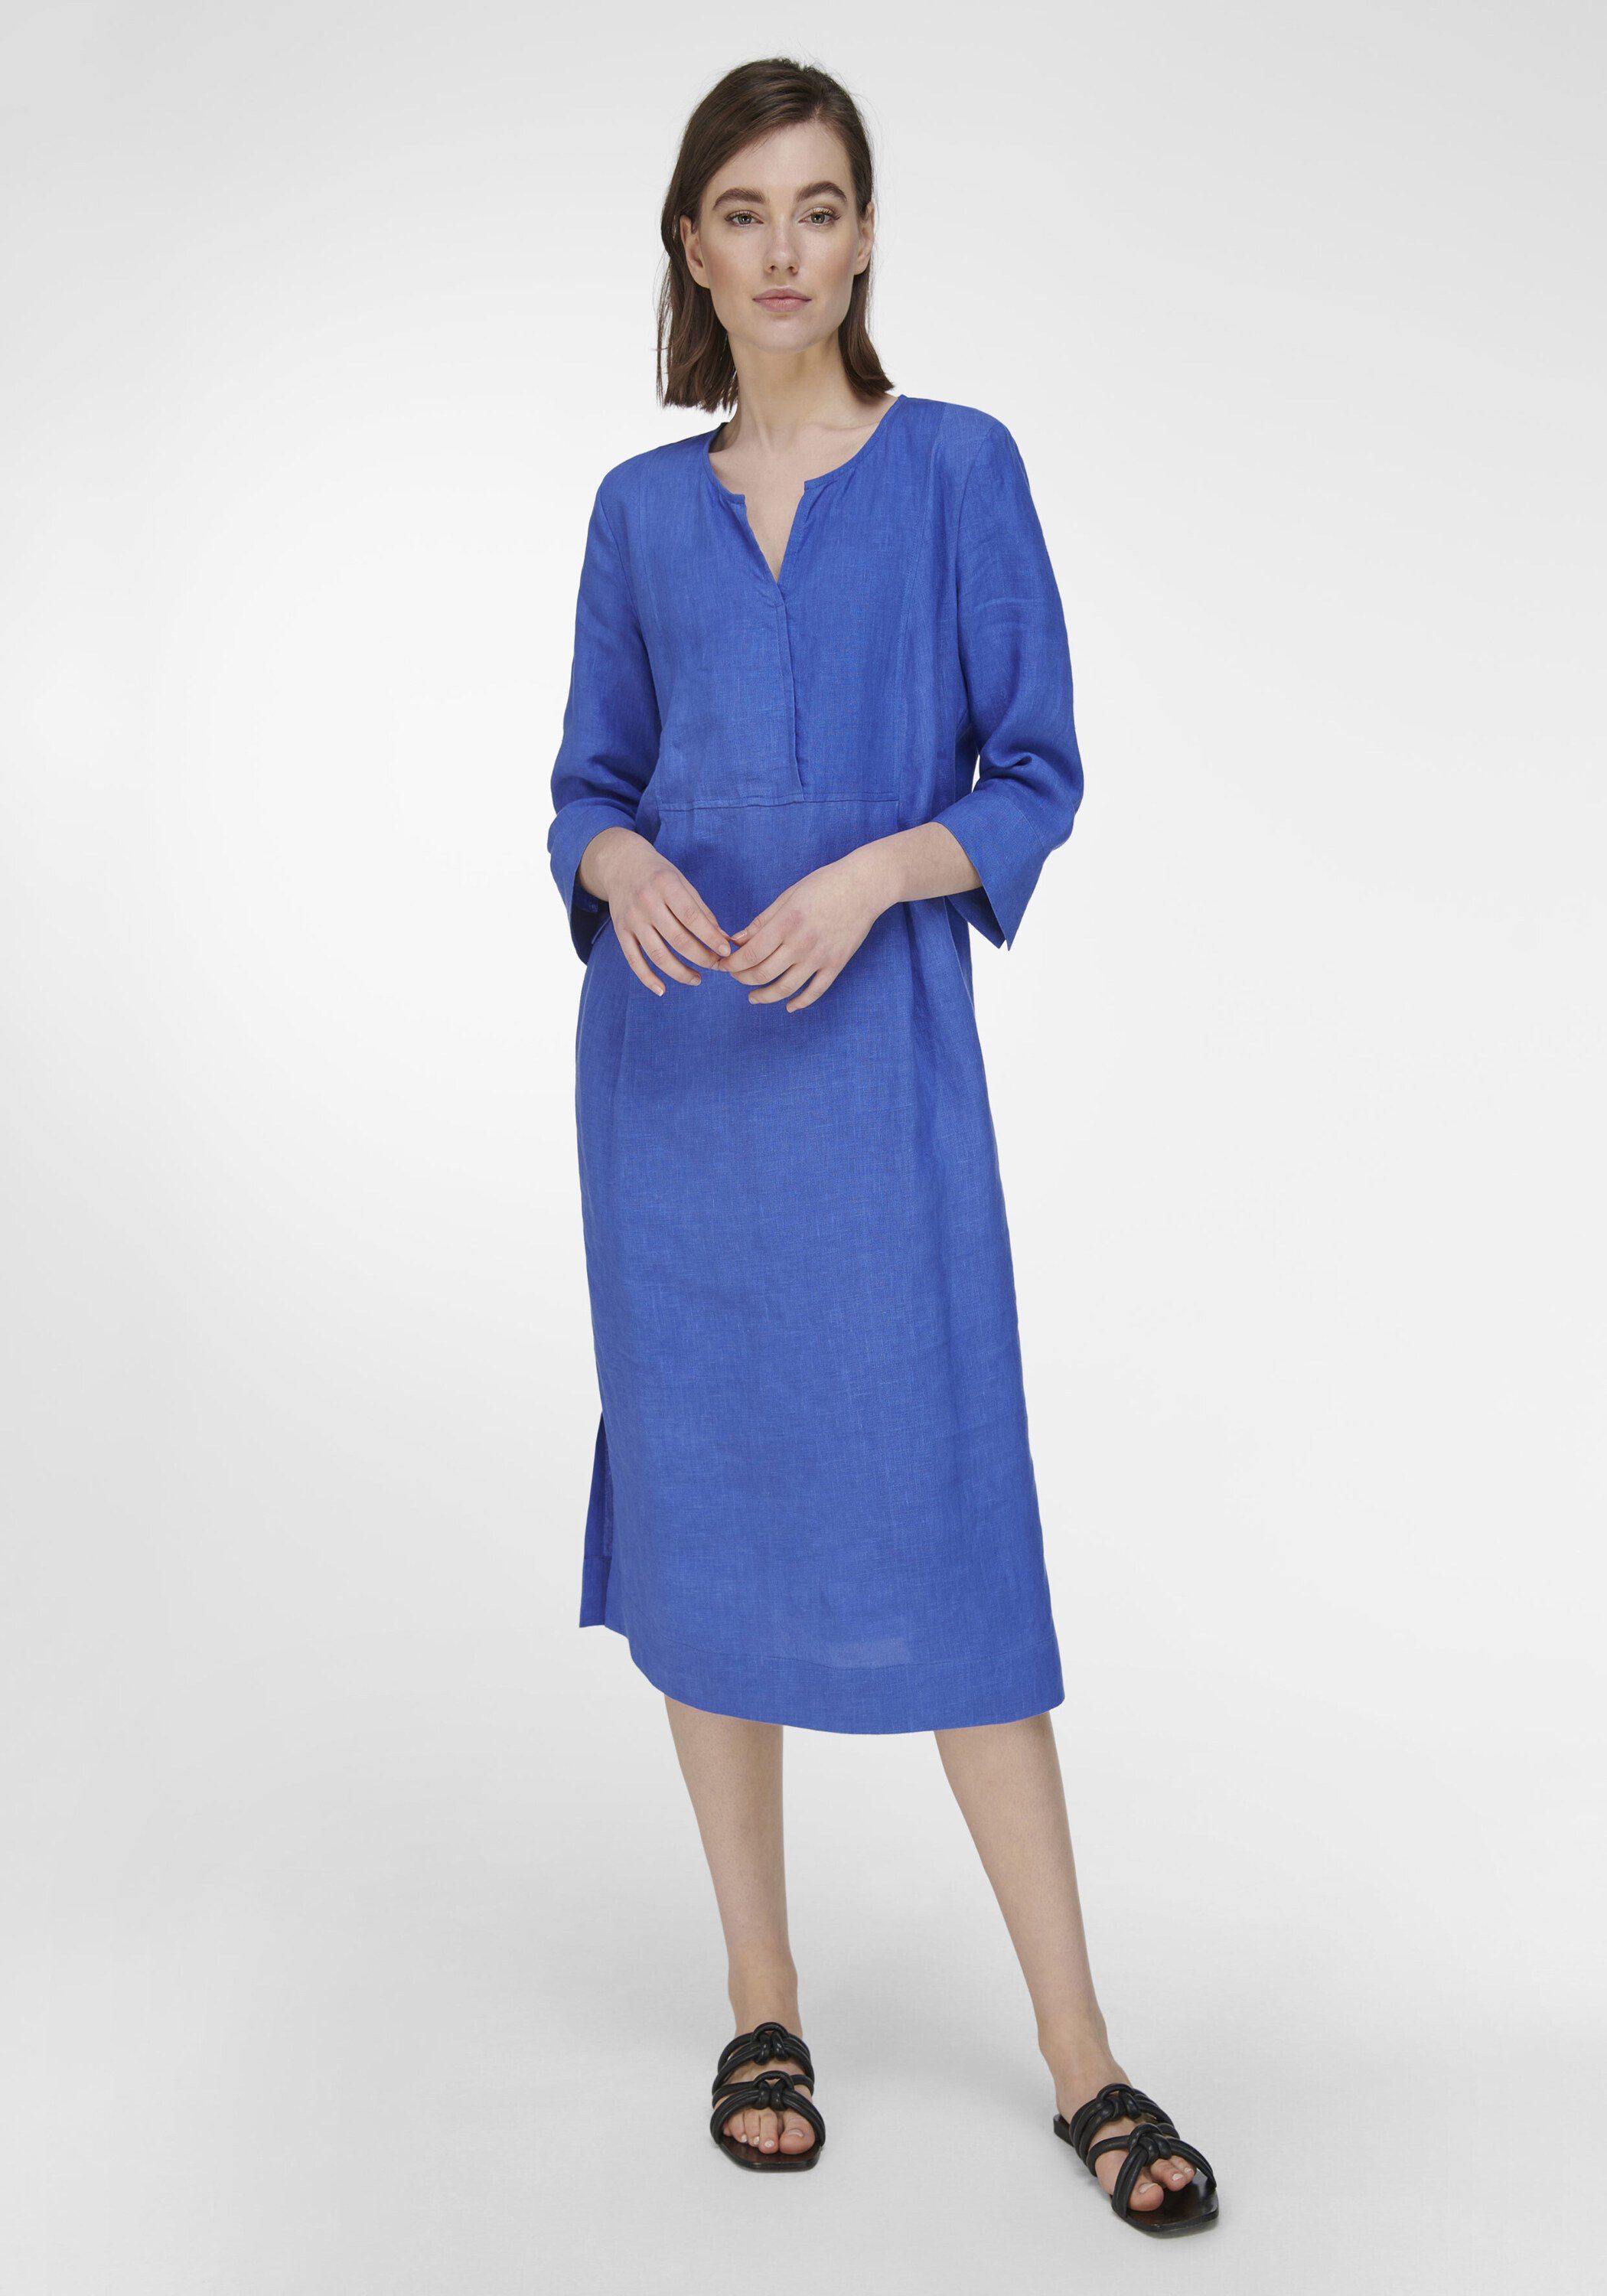 Peter Hahn Kleid online kaufen | OTTO